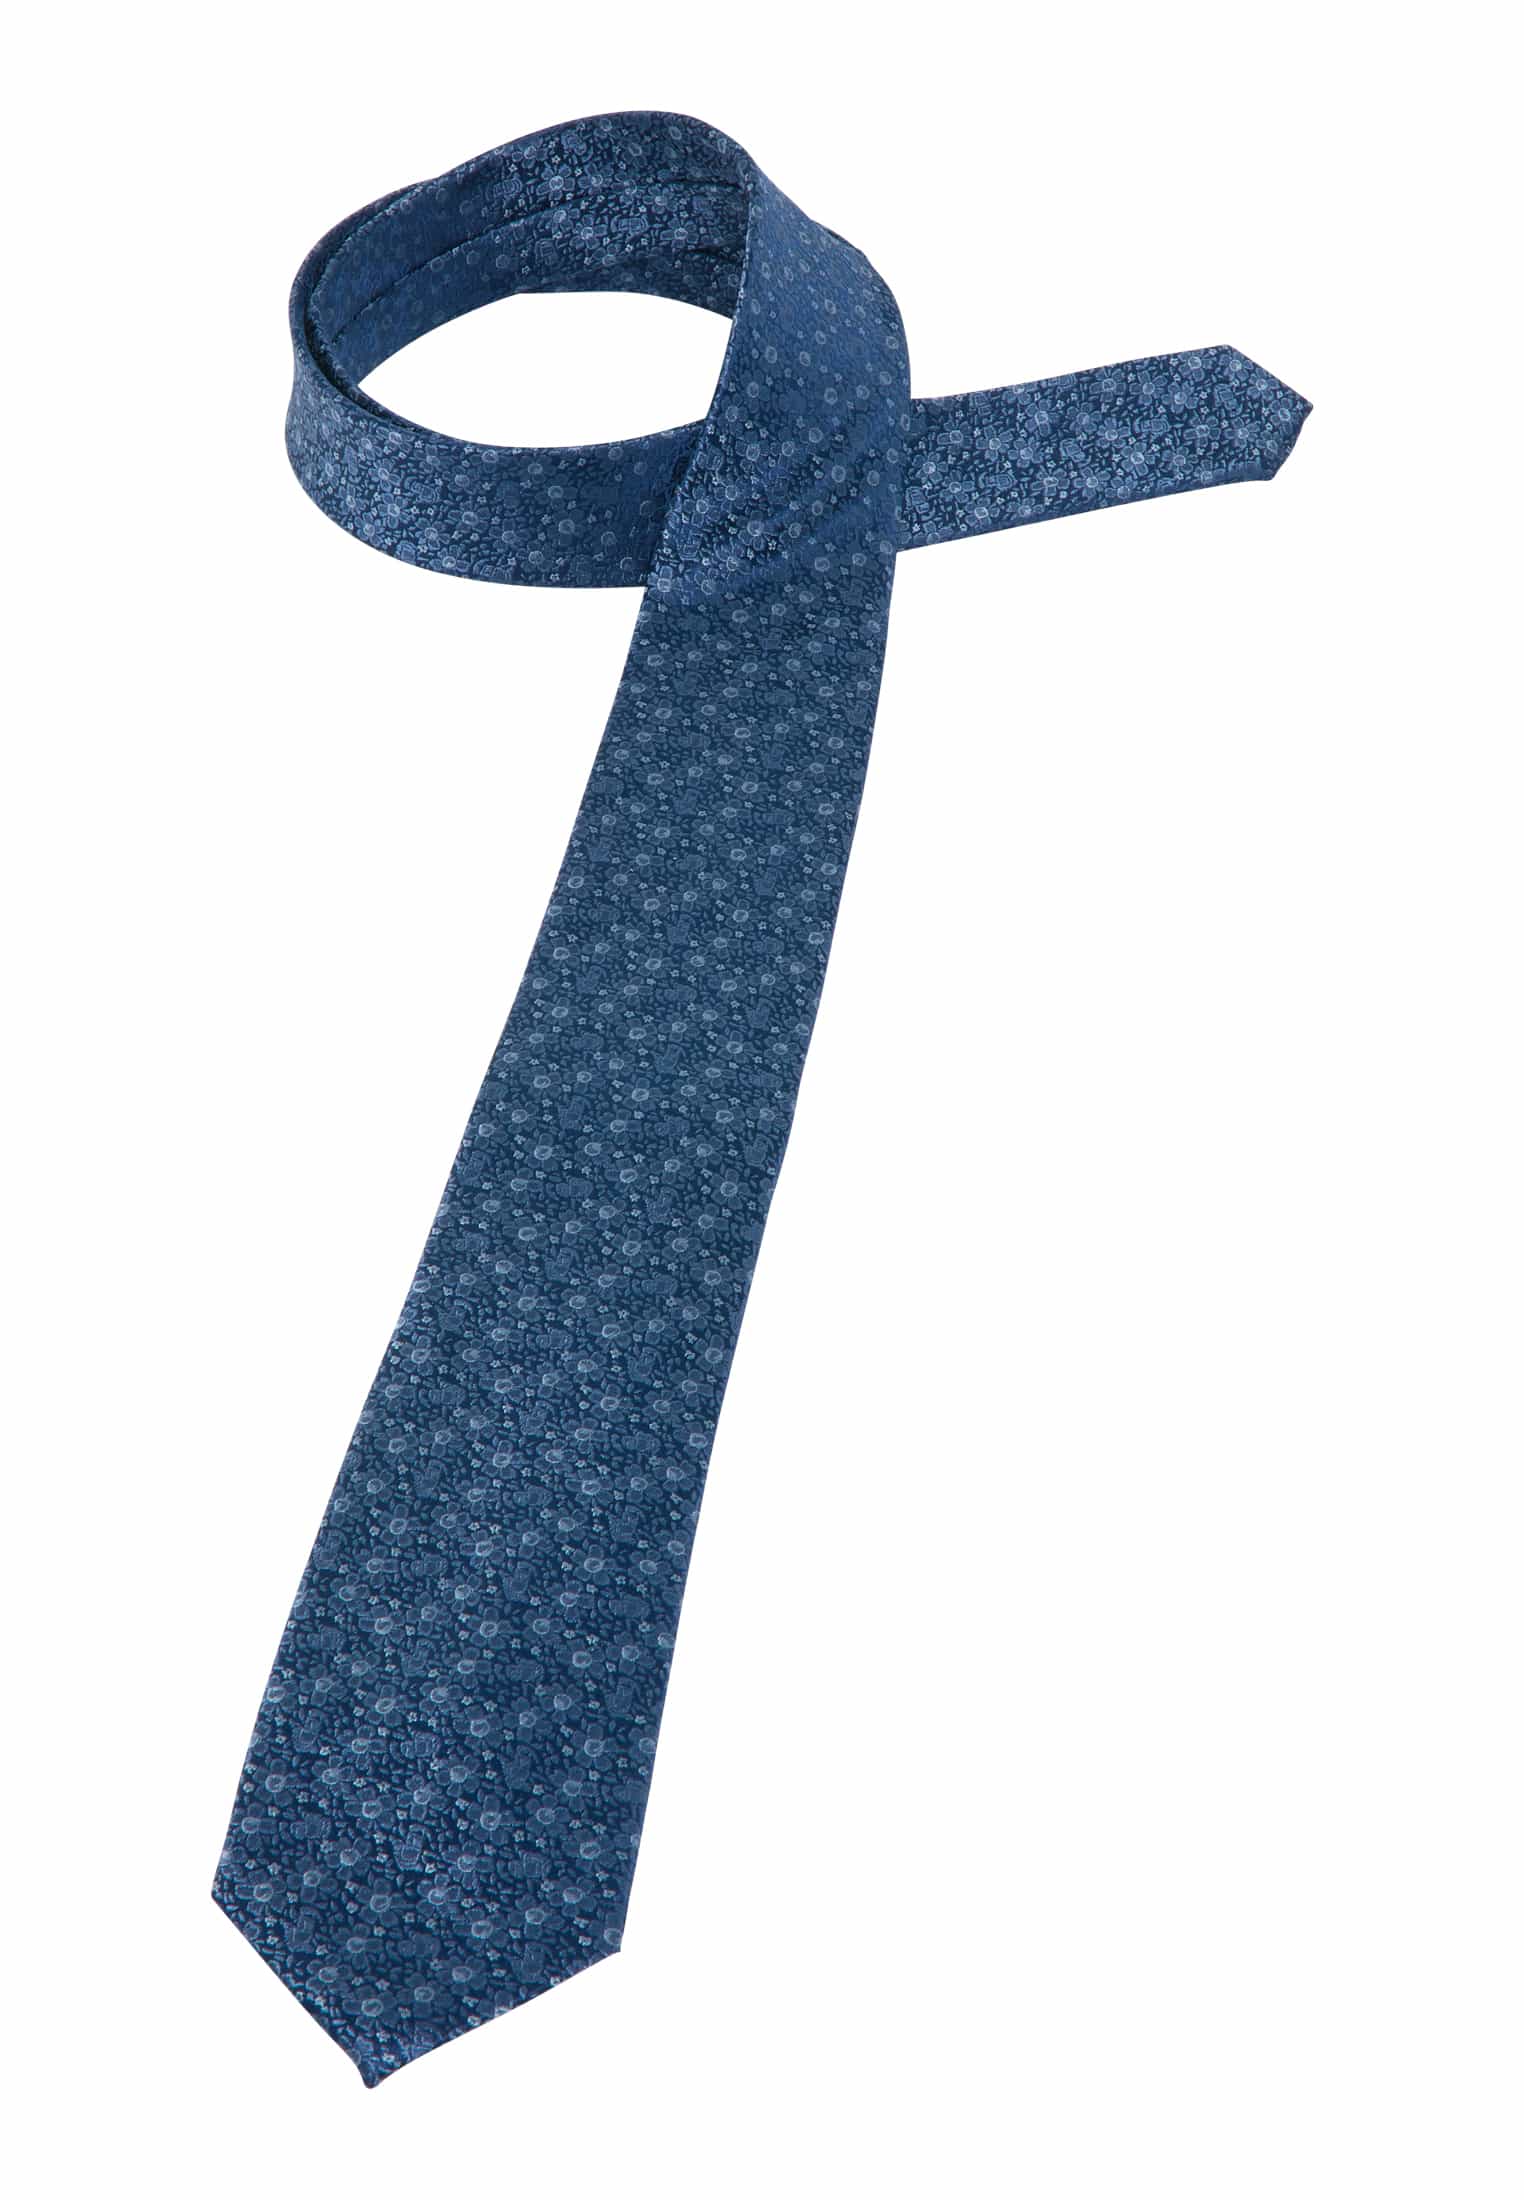 Krawatte in blau gemustert 1AC01877-01-41-142 | 142 blau | 